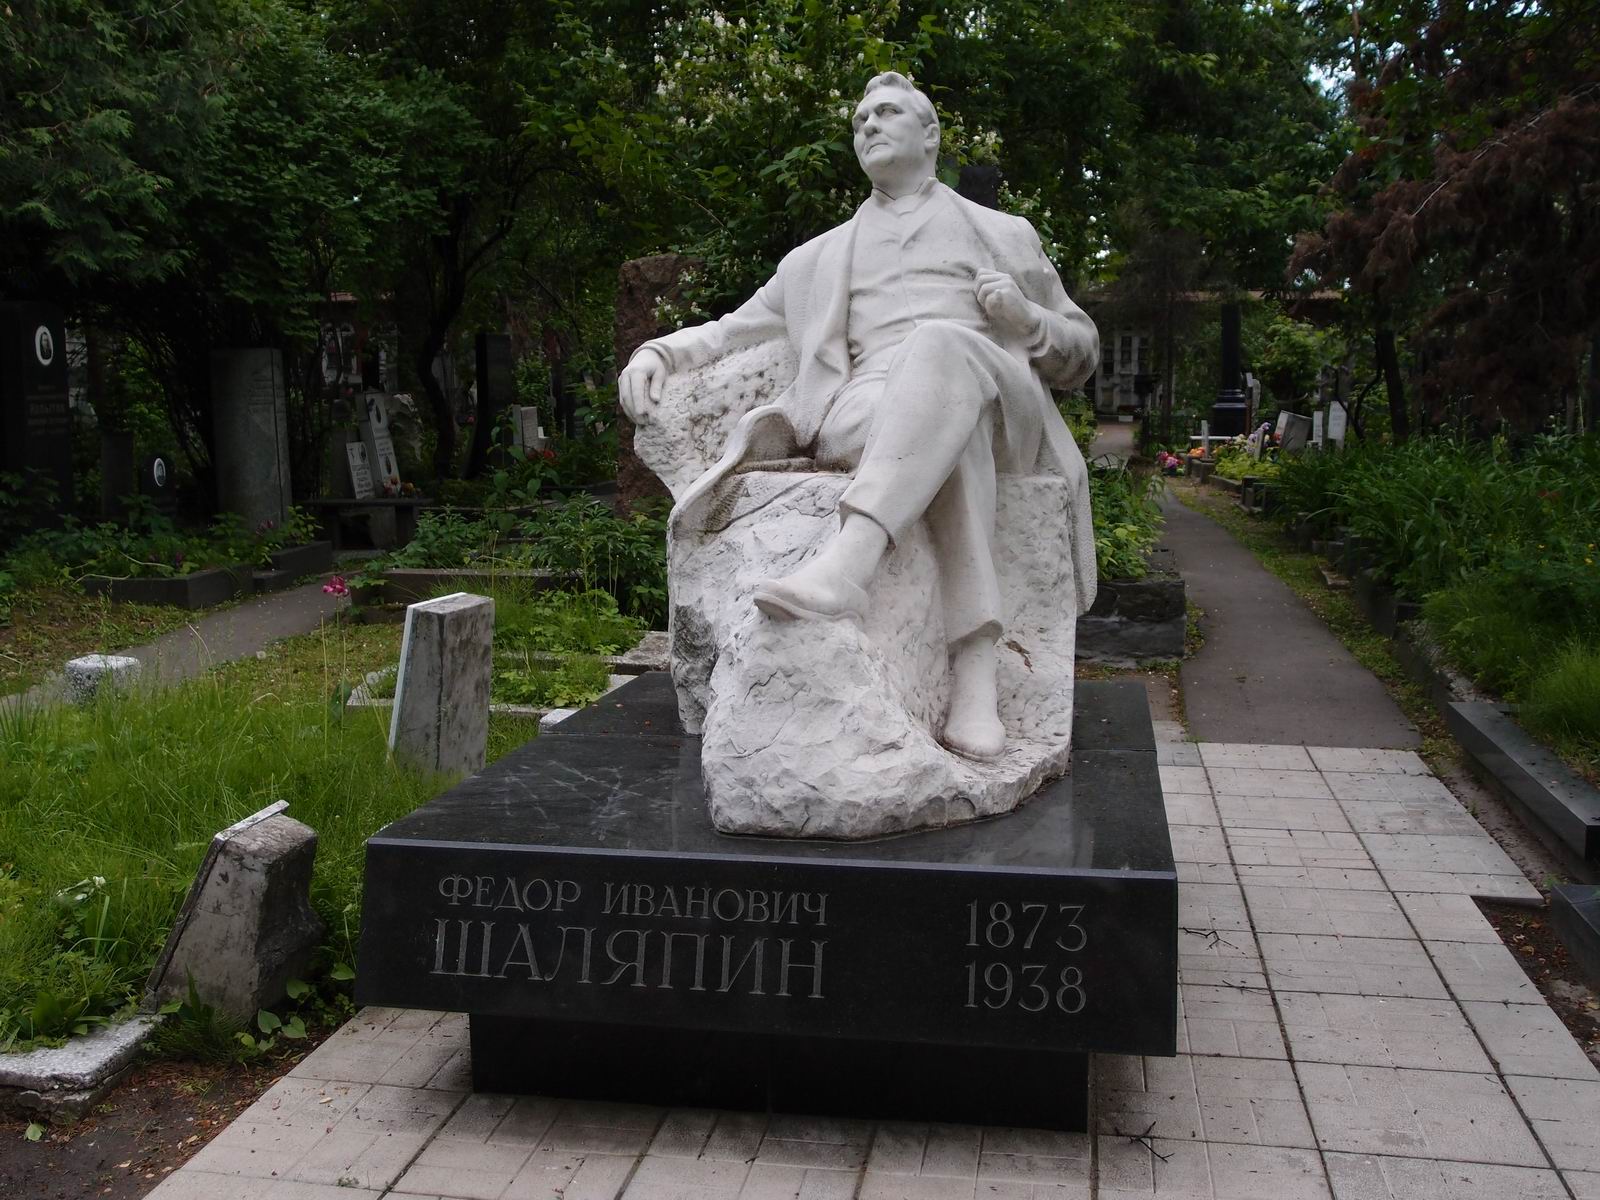 Памятник на могиле Шаляпина Ф.И. (1873–1938), ск. А.Елецкий, арх. Ю.Воскресенский, на Новодевичьем кладбище (4–49–1).